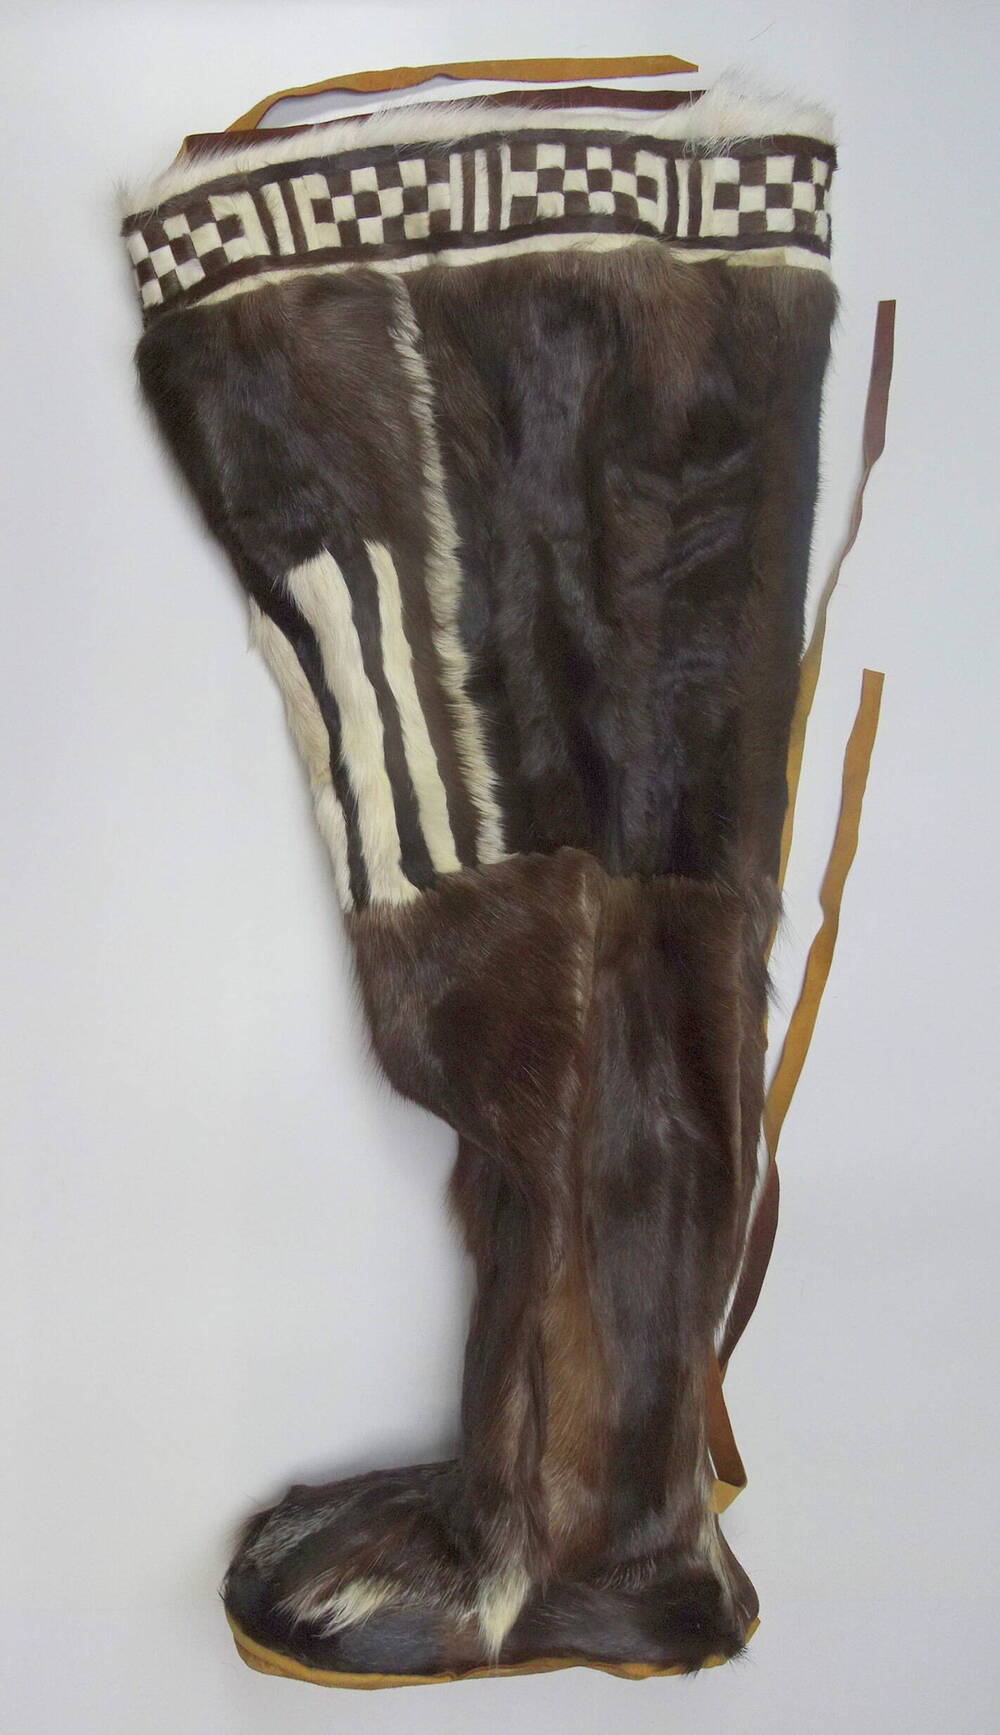 Обувь эвенская мужская зимняя - мурун